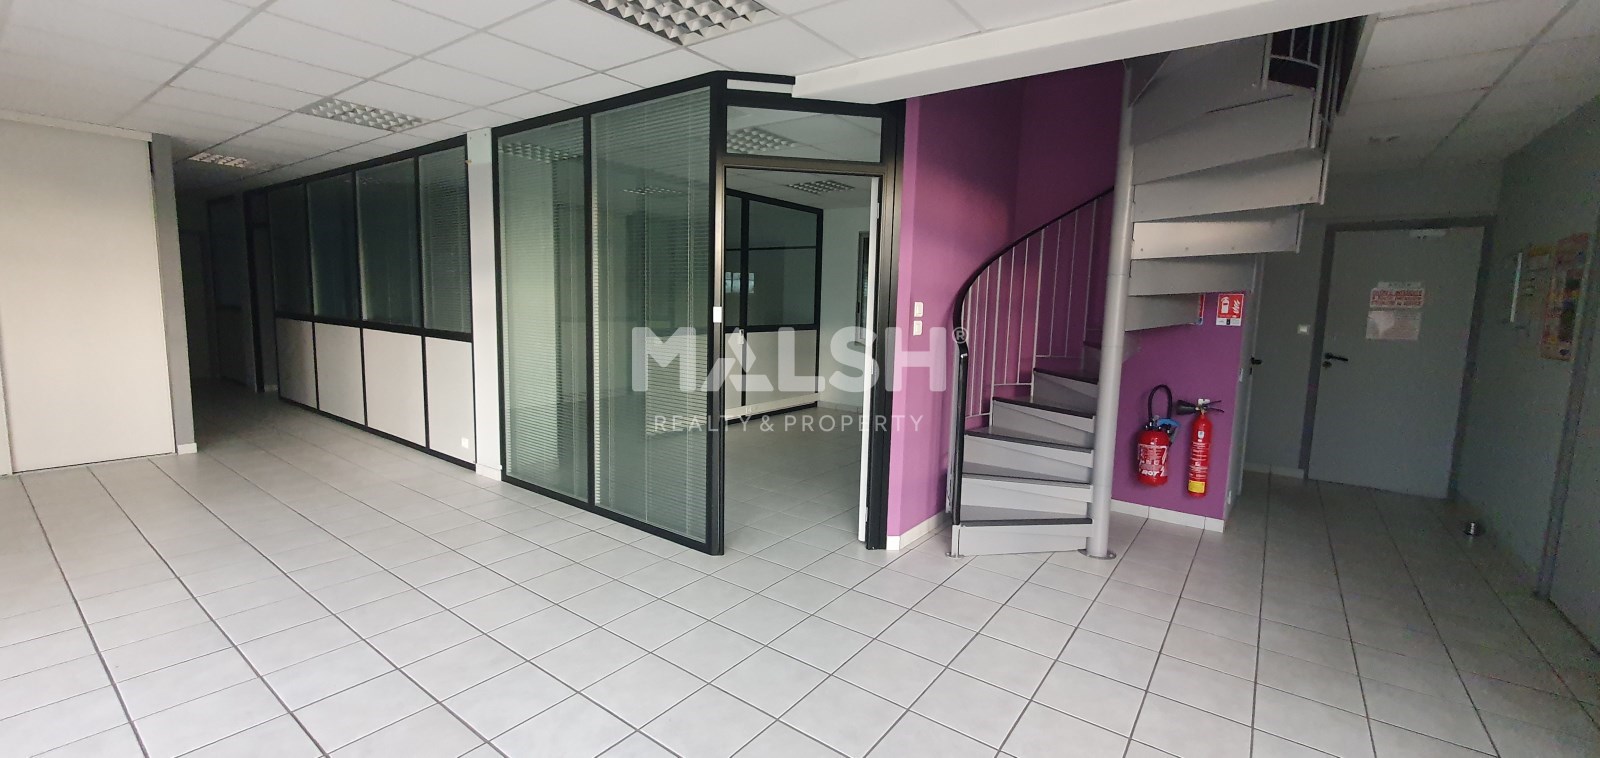 MALSH Realty & Property - Activité - Extérieurs NORD (Villefranche / Belleville) - Péronnas - 20